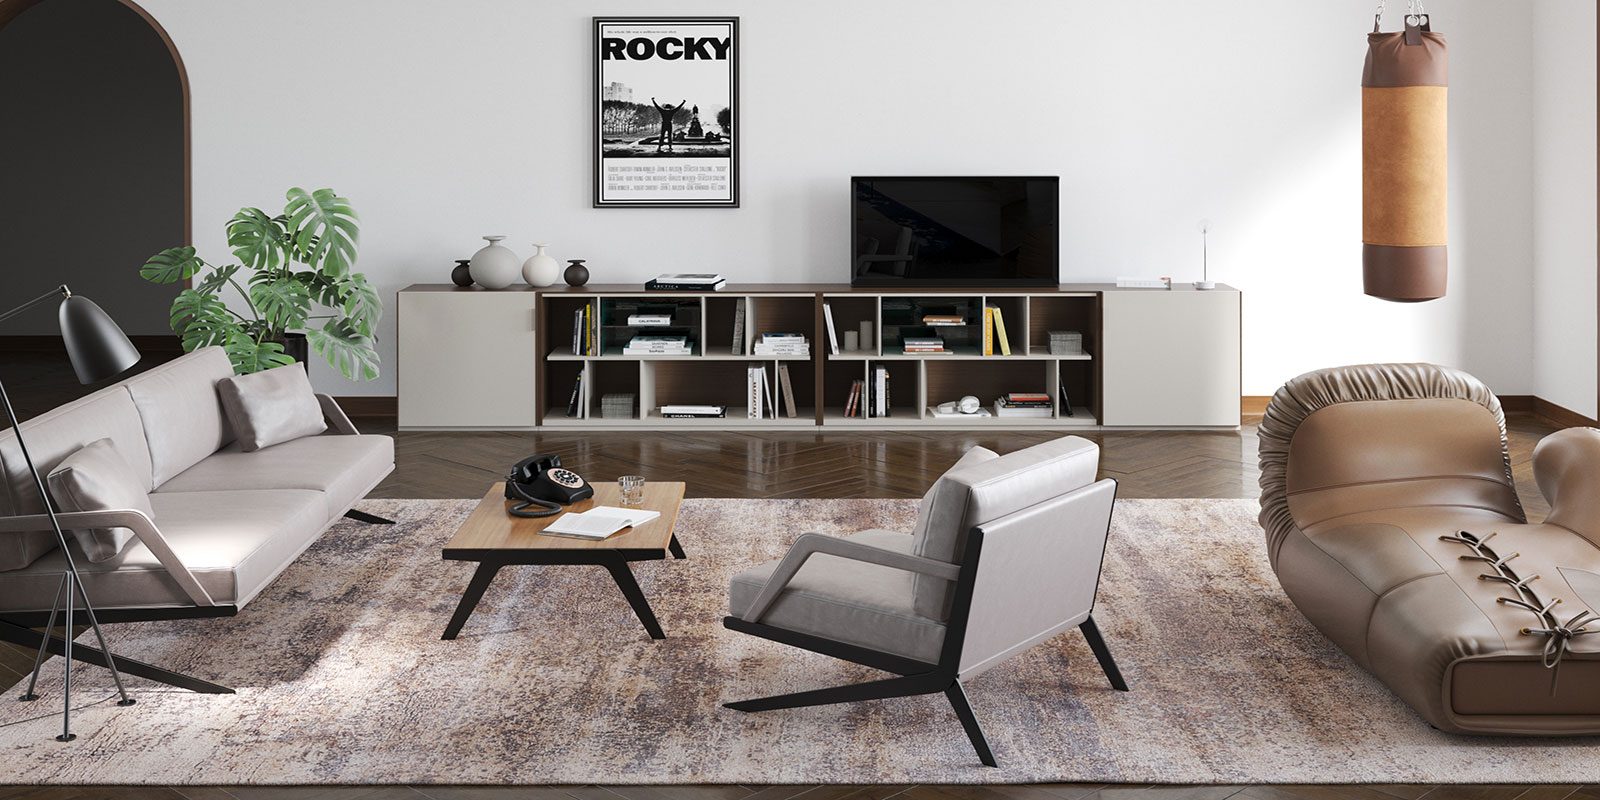 Modernes Wohnzimmer mit einer Mischung aus eleganten und Retro-Elementen, darunter ein beiges Sofa, zwei graue Sessel, ein Couchtisch, ein großes Bücherregal, ein Fernseher an der Wand und eine gerahmte 